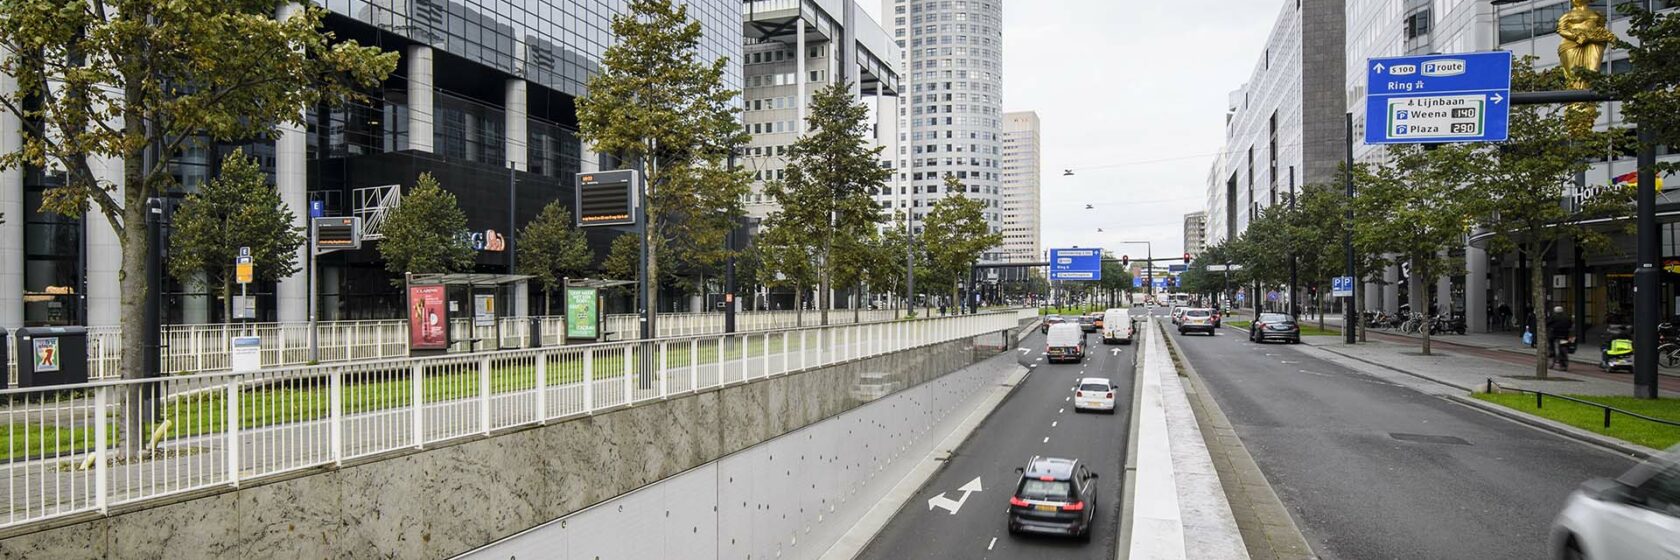 Autoweg en gebouwen in Rotterdam